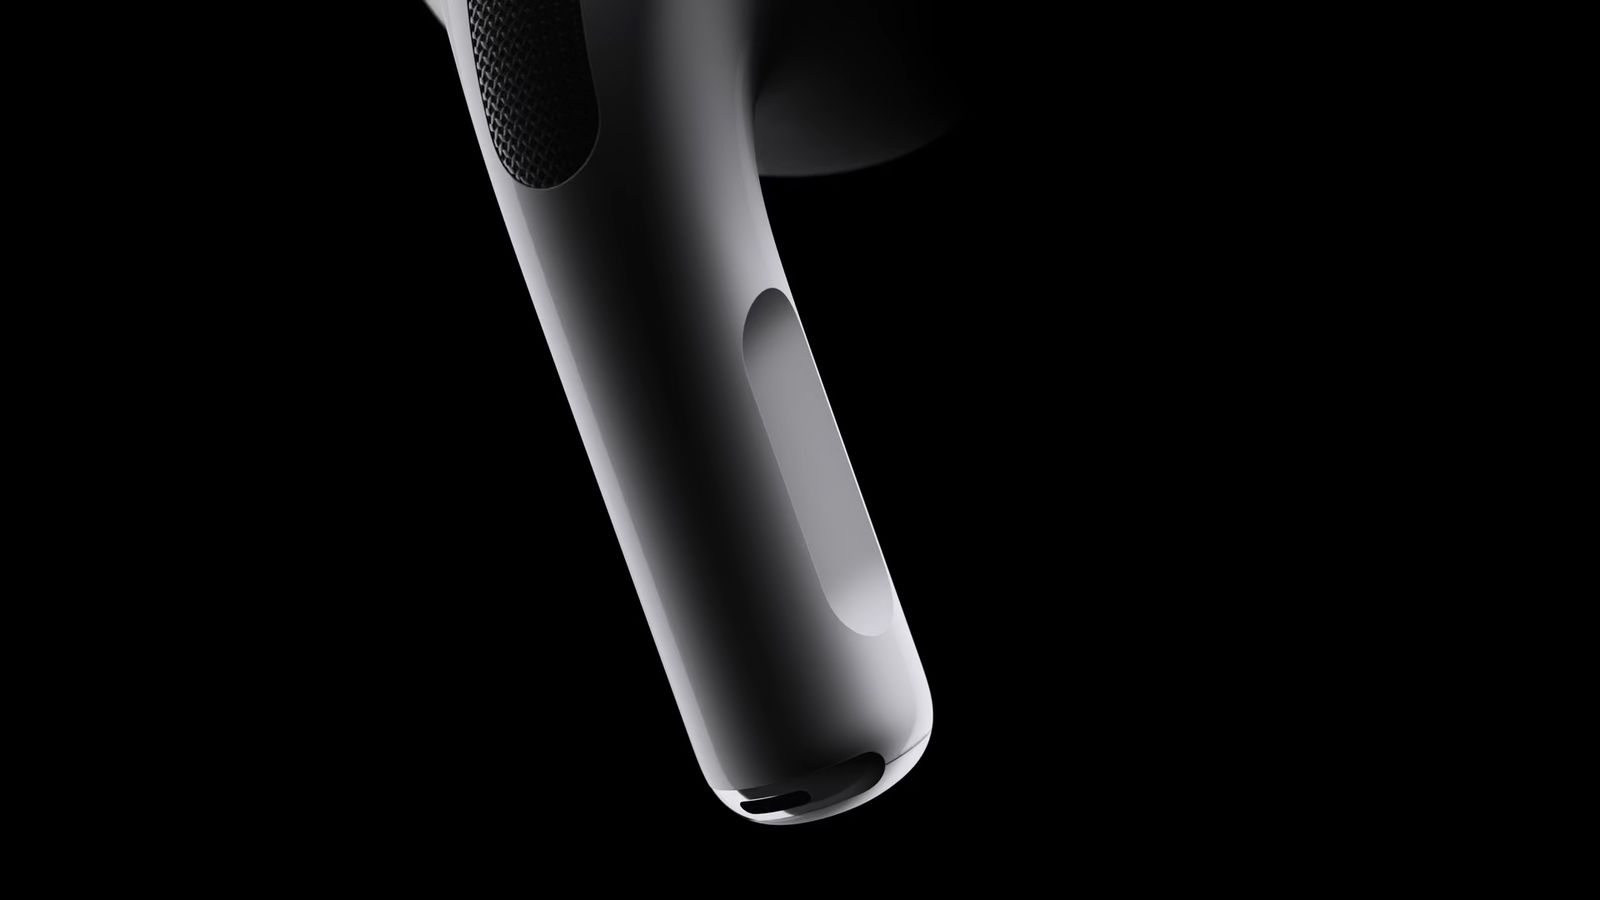 iPhoneIslam.com より、暗い背景にモダンでエレガントな黒い AirPods のクローズアップがあり、洗練されたデザインと質感が強調されています。